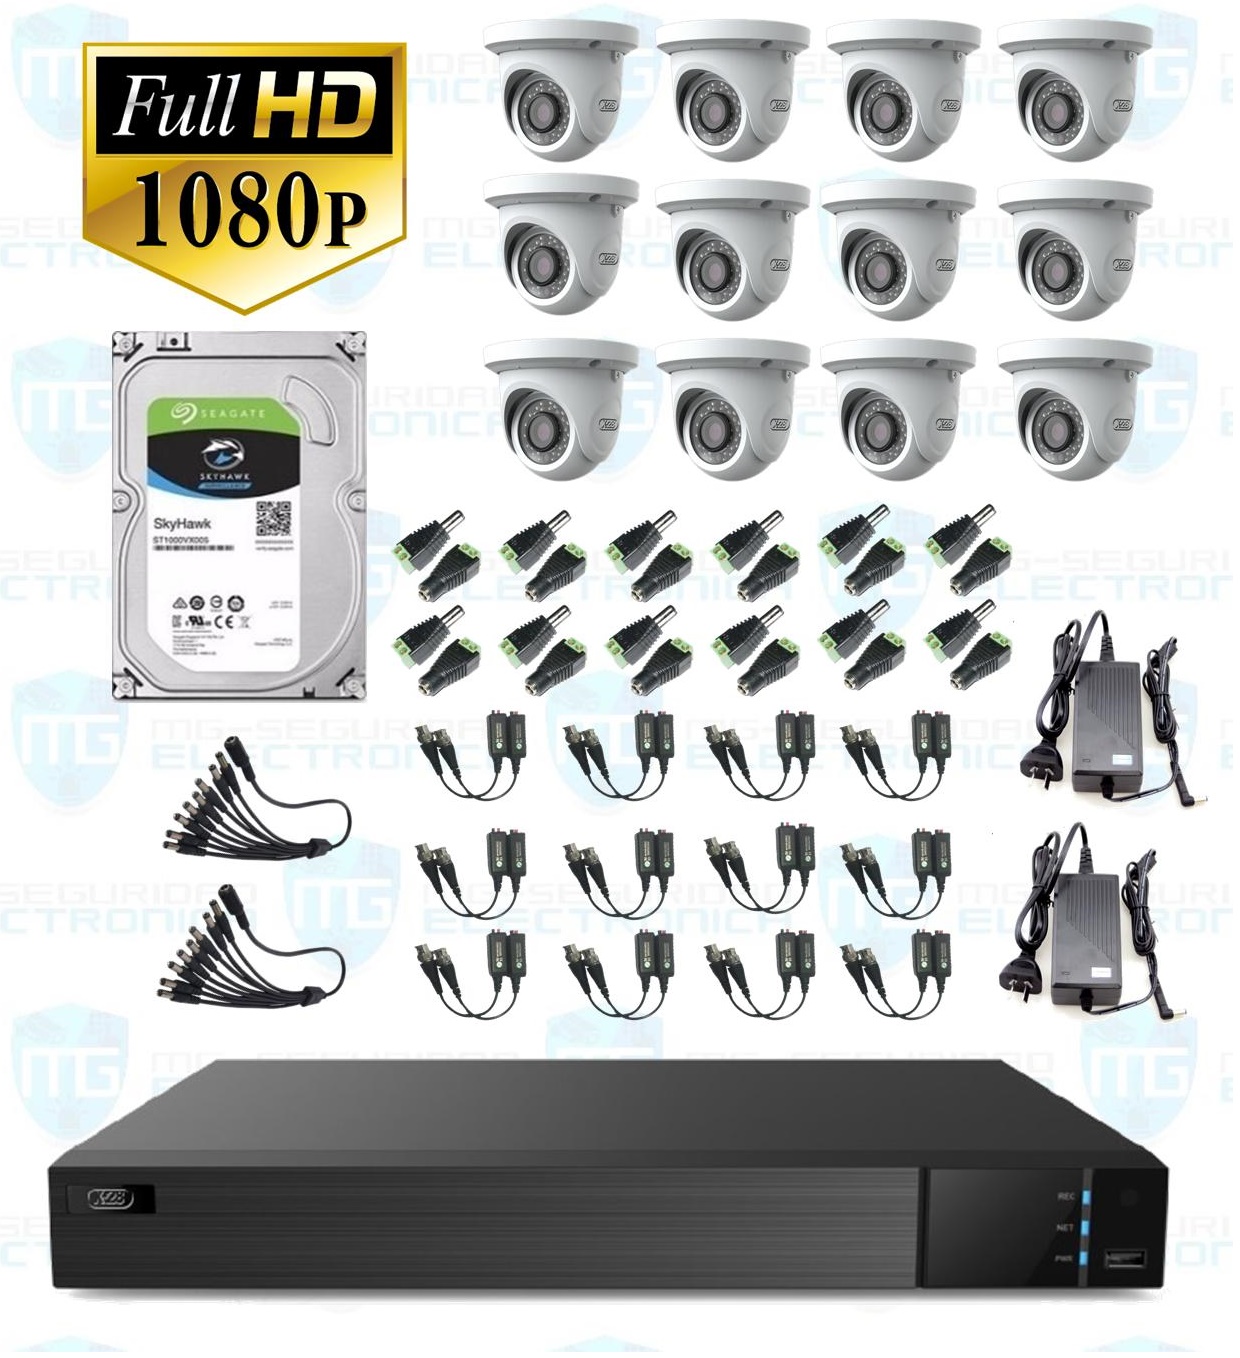 DVR, disco 4 TB, 12 cámaras minidomo, balunes, 2 fuentes y  conectores.